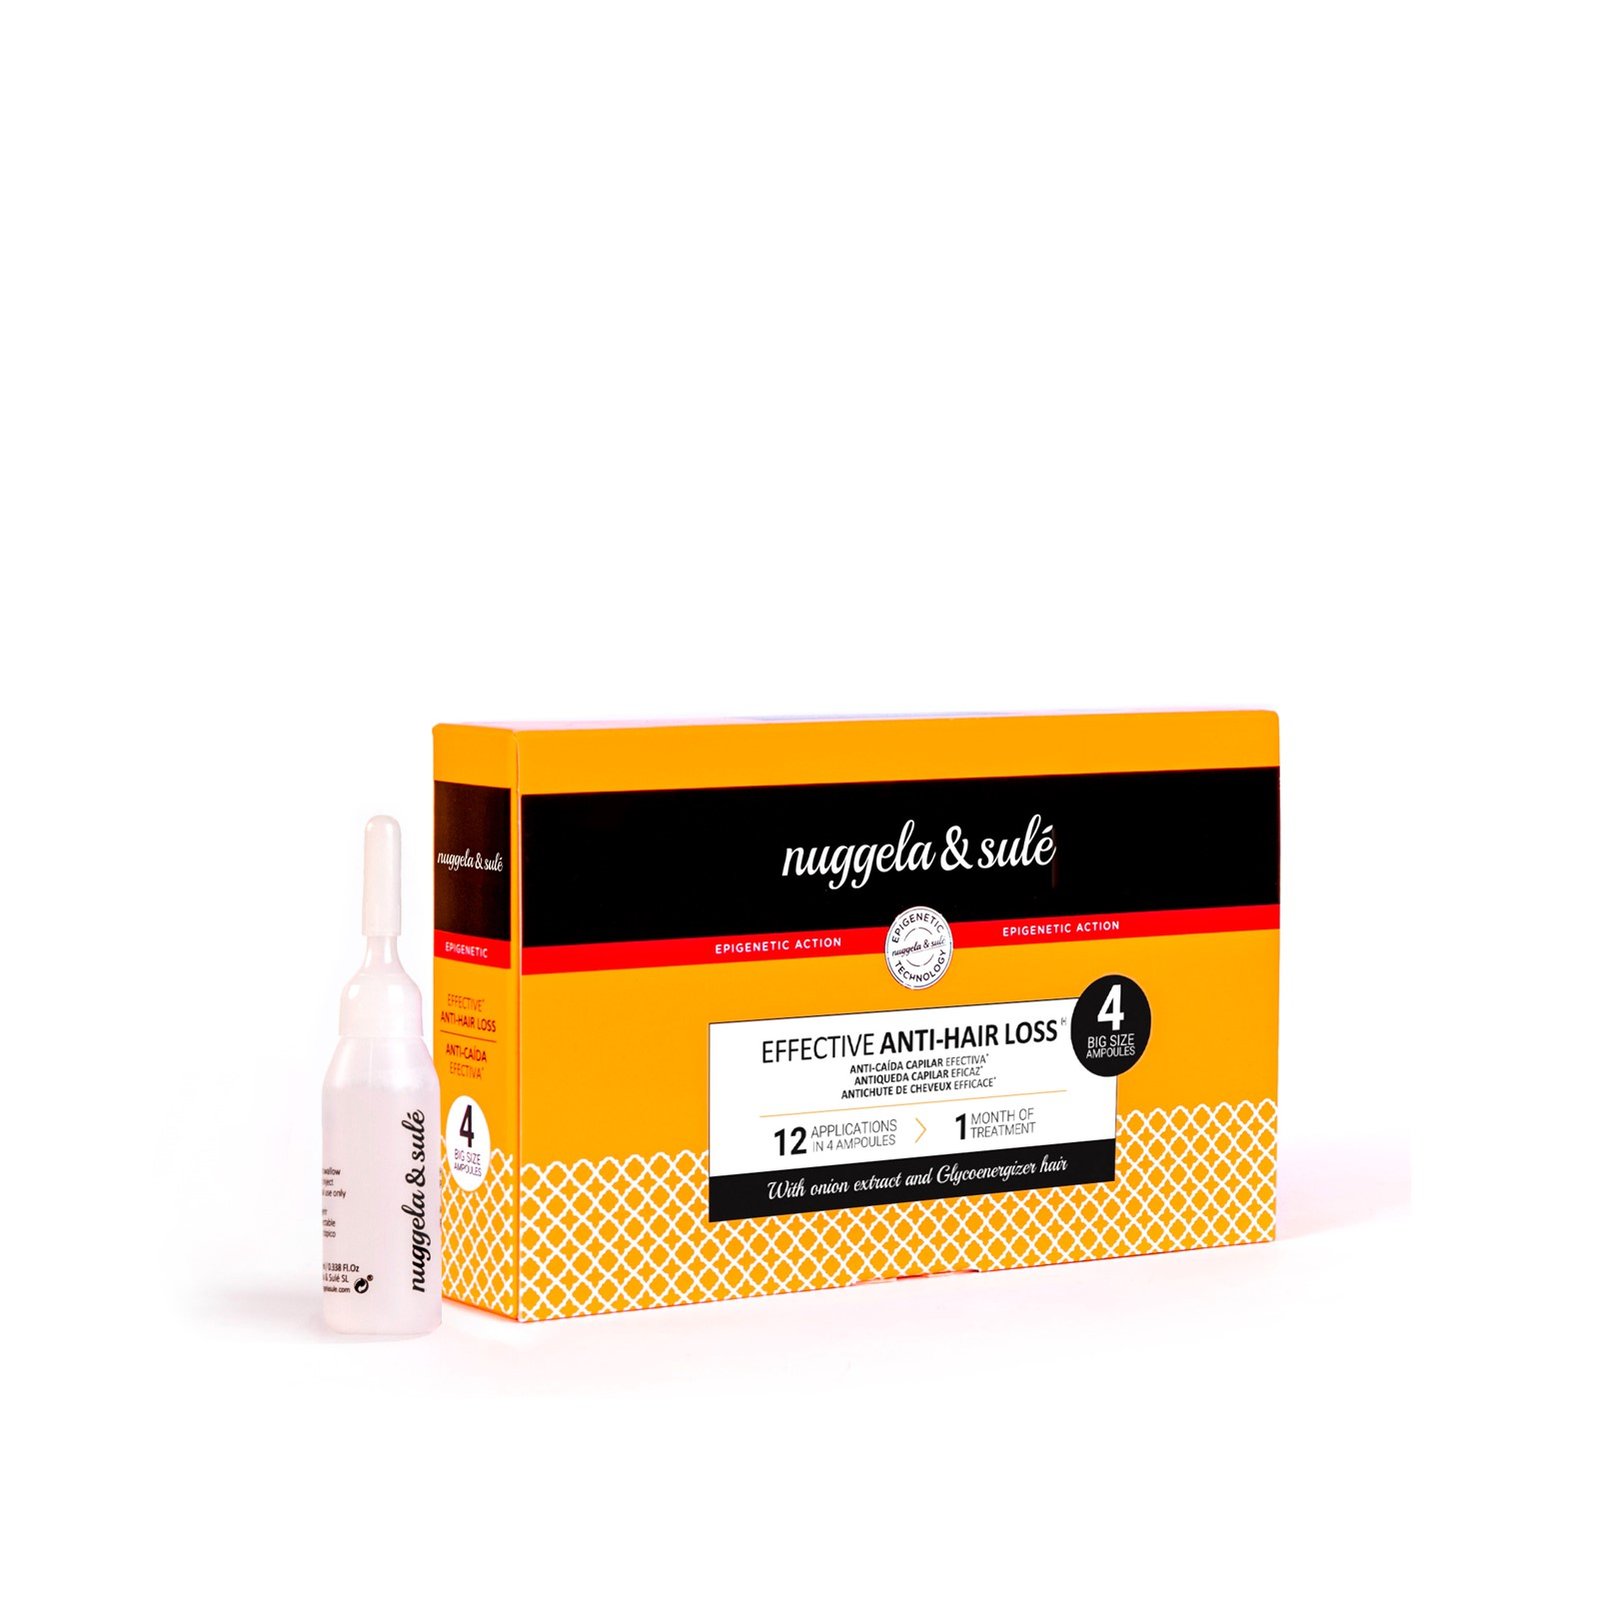 Nuggela & Sulé Effective Anti-Hair Loss Ampoule 10ml x4